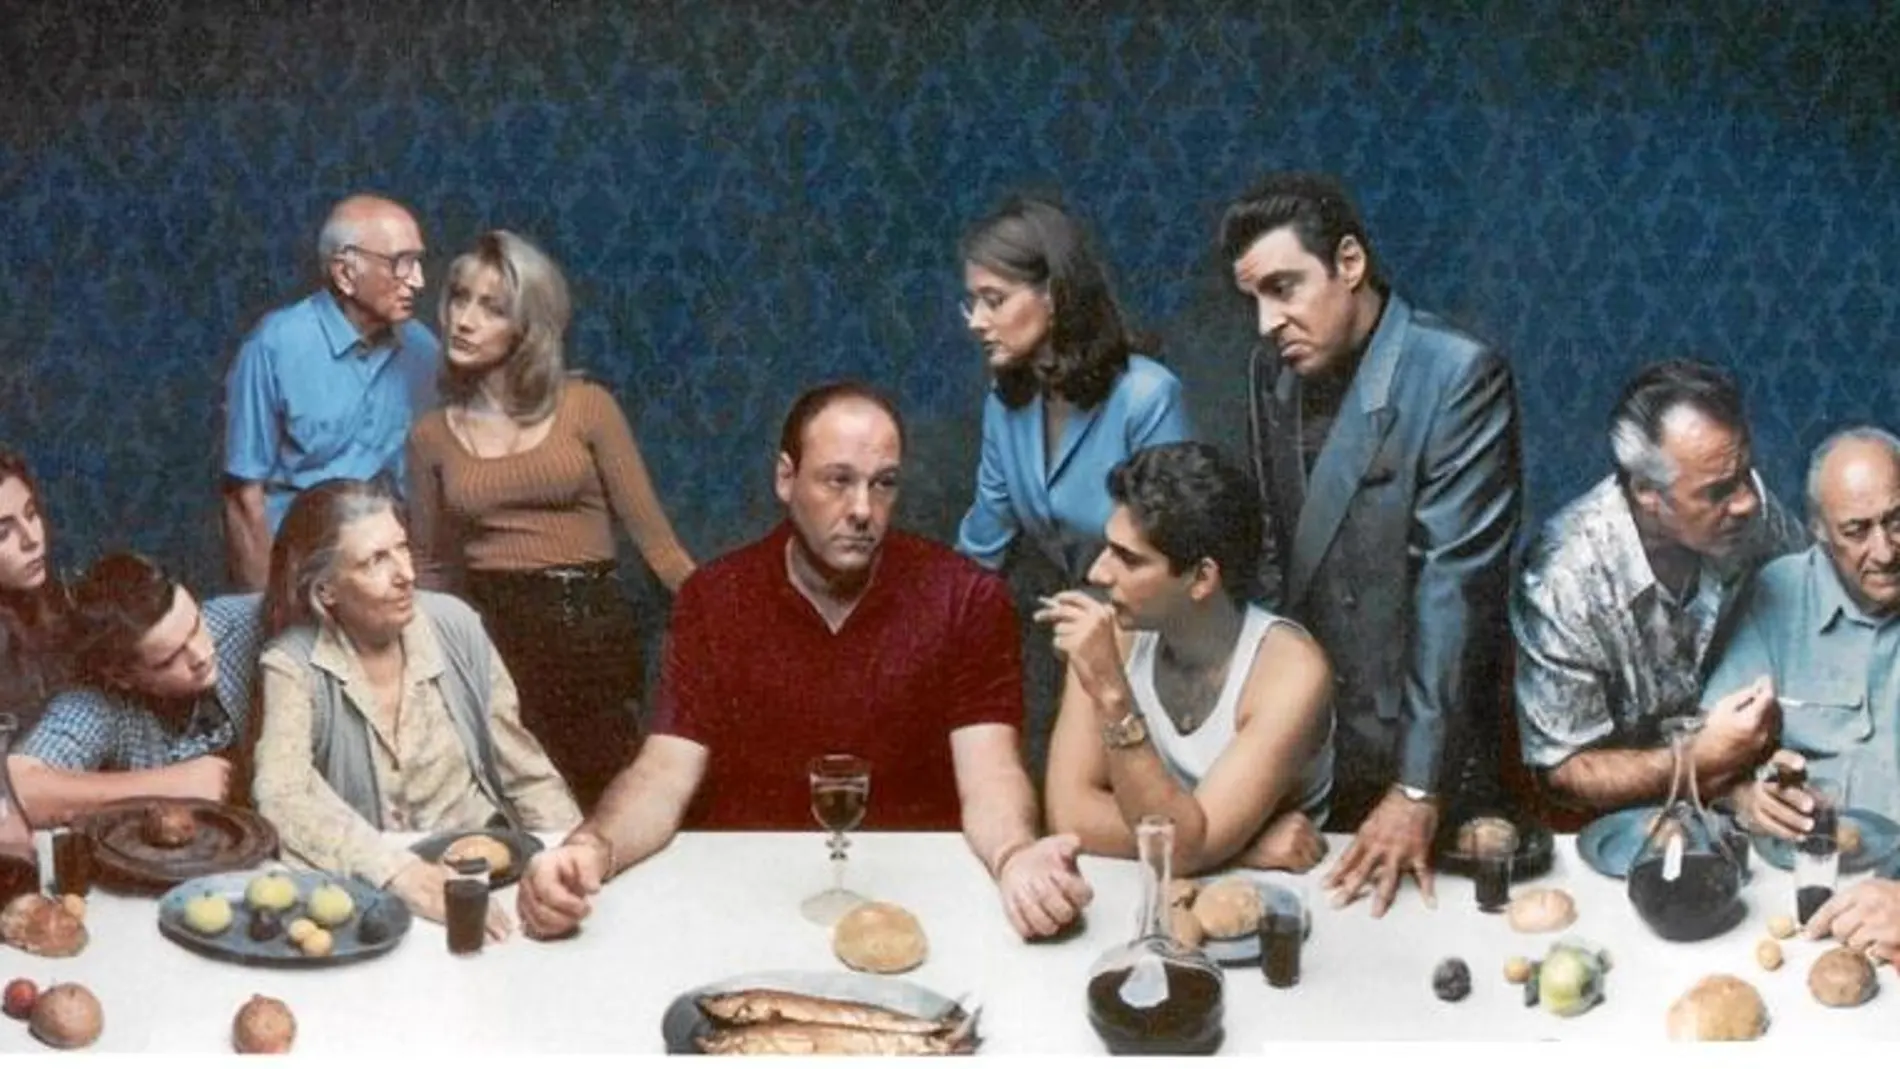 La comida tiene un papel primordial en la serie «Los Soprano», donde podemos ver a su protagonista, Tony, degustando todo tipo de platos